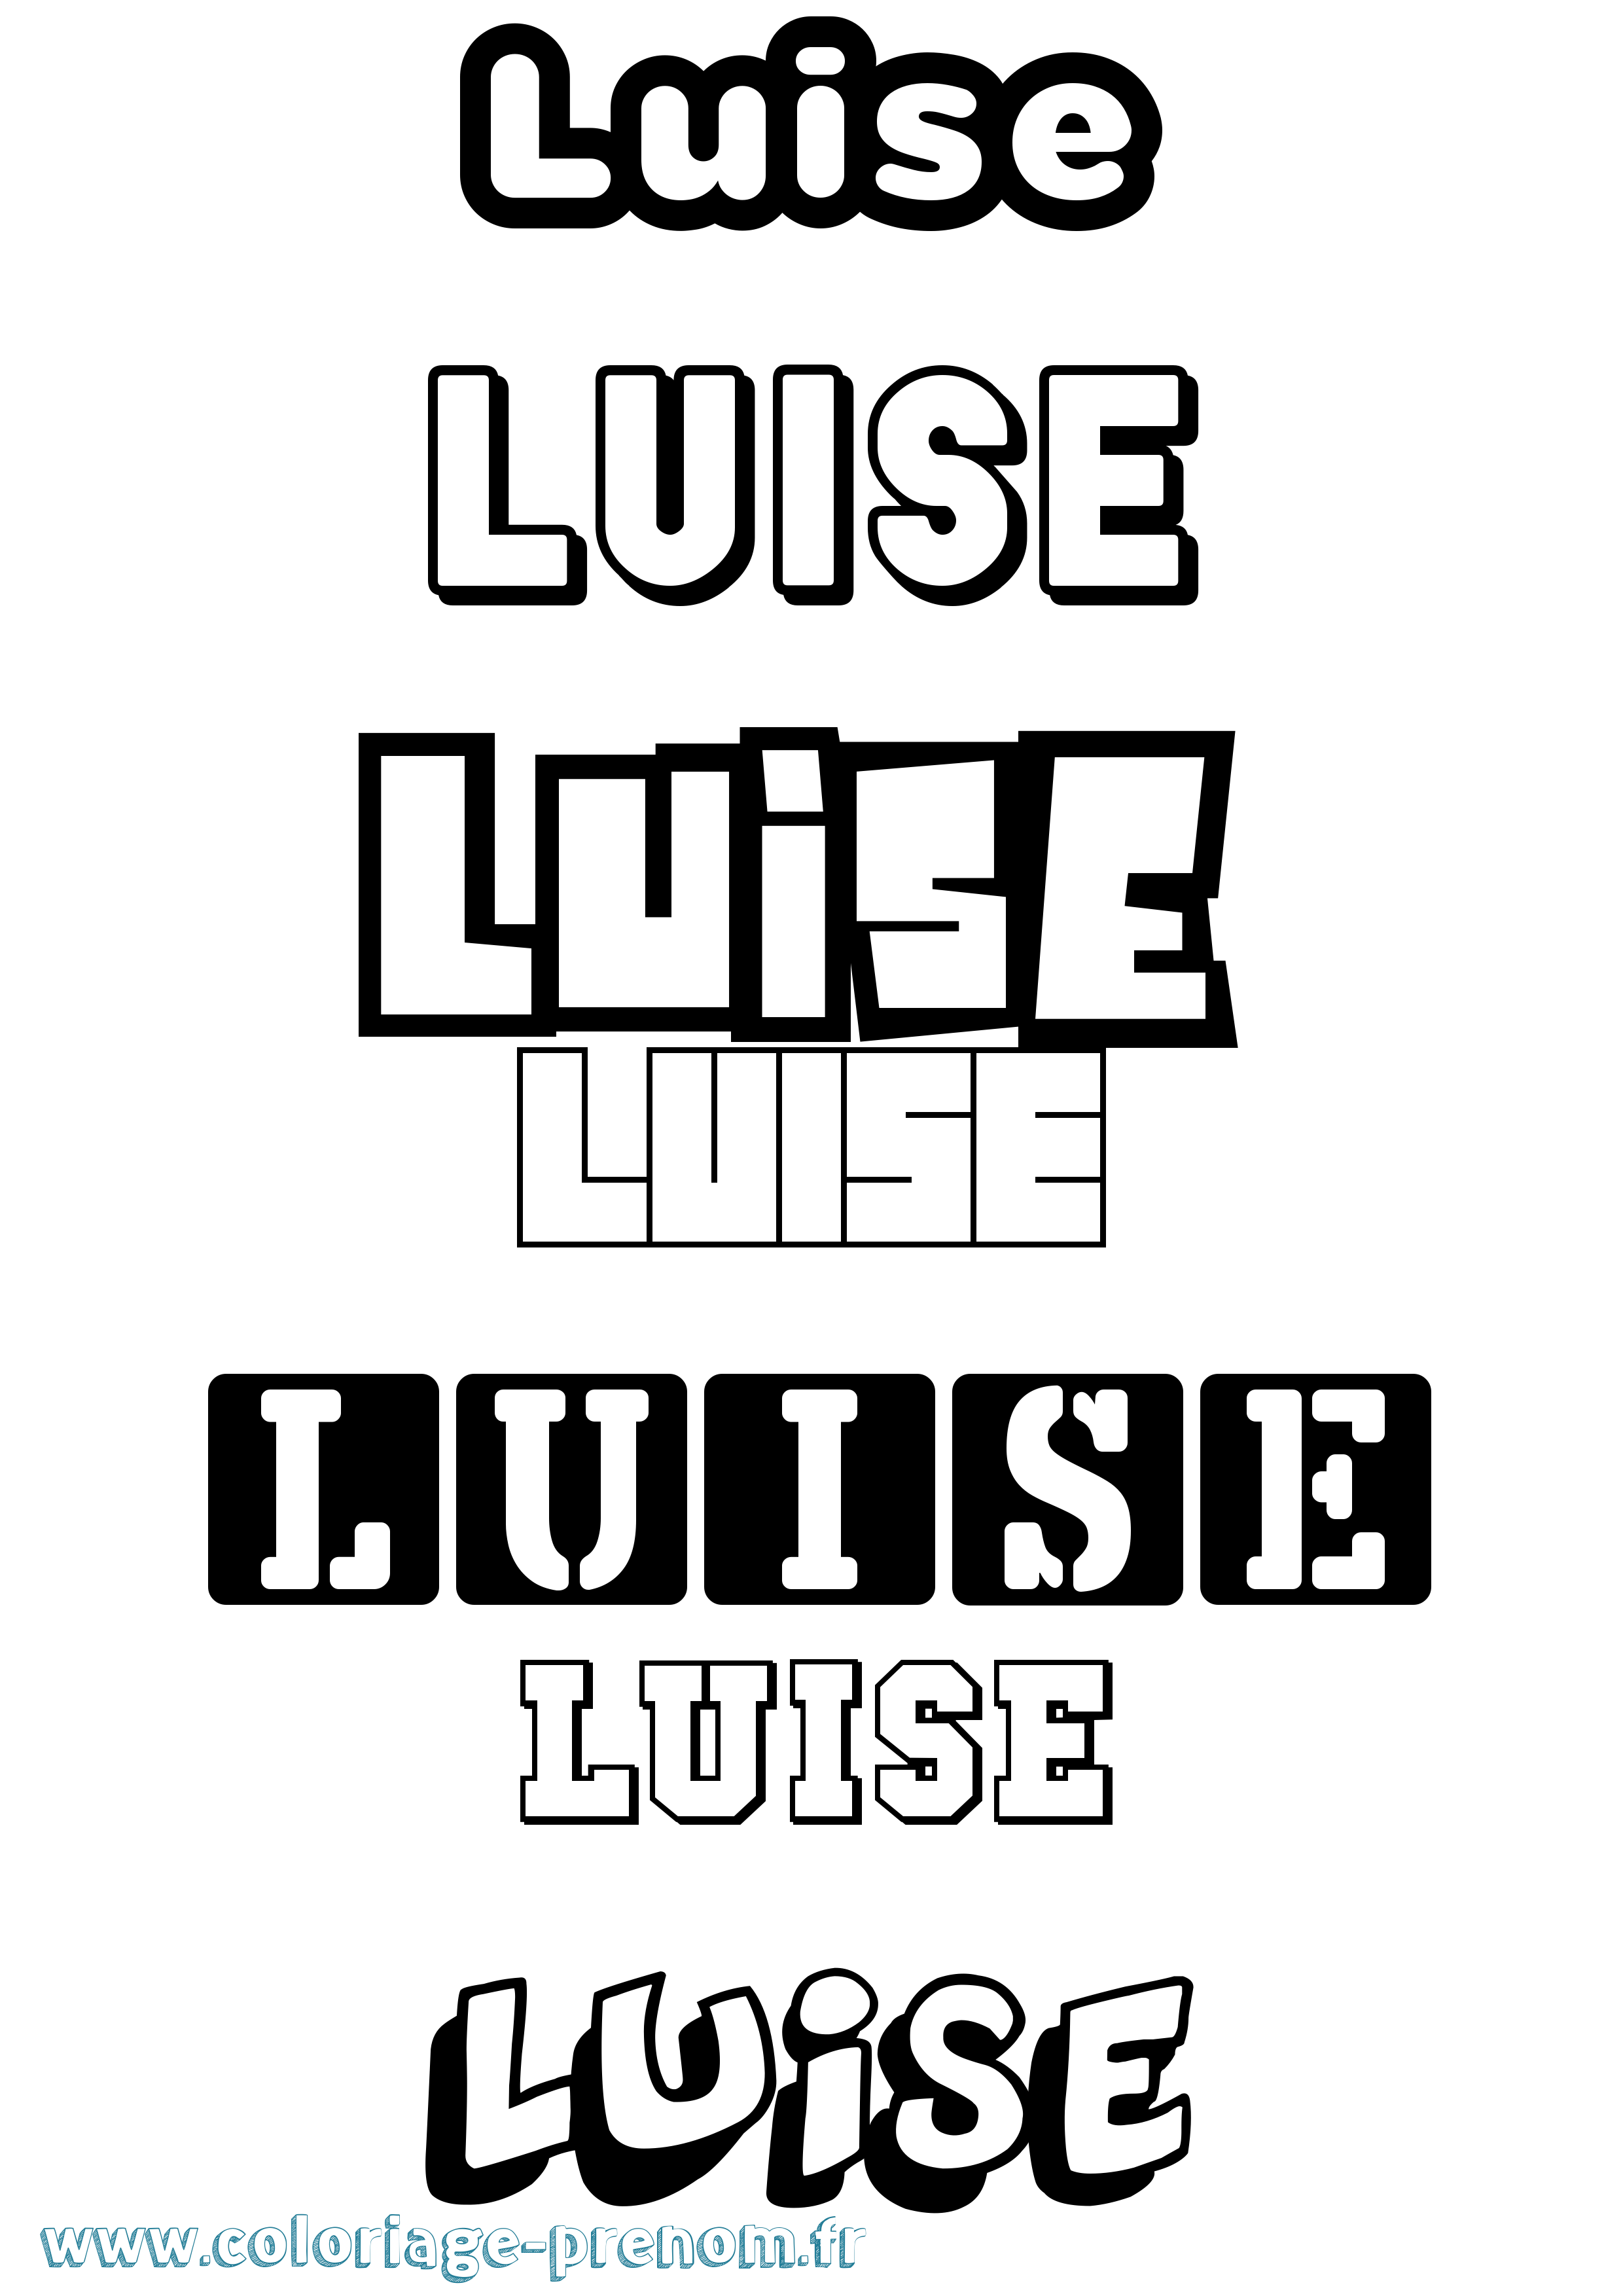 Coloriage prénom Luise Simple